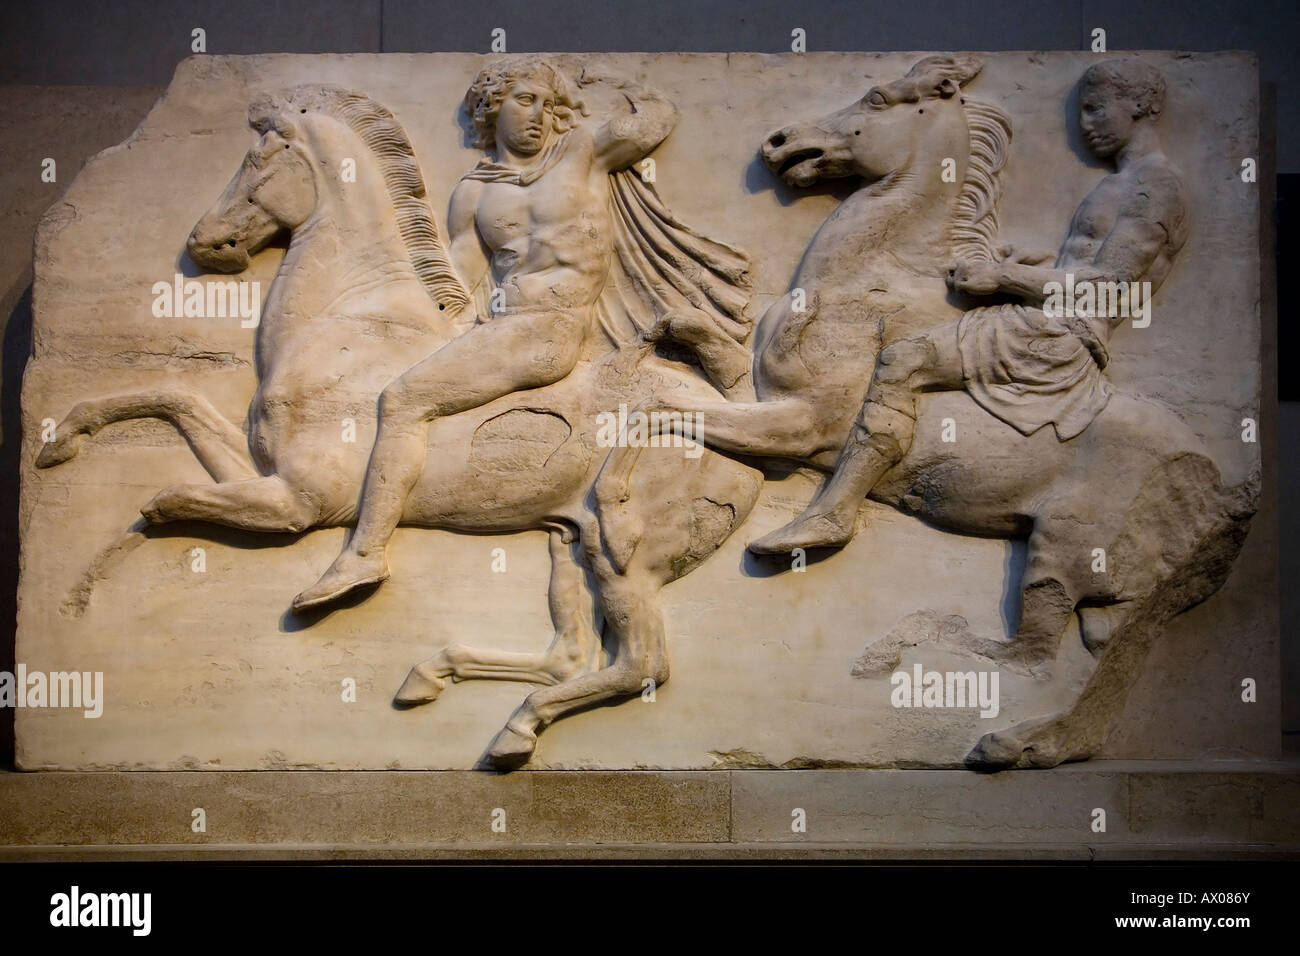 Mármoles de Elgin jinetes del friso de mármol en el lado norte del Partenón de Atenas 4C del siglo IV A.C. Museo Británico de Londres Reino unido Foto de stock